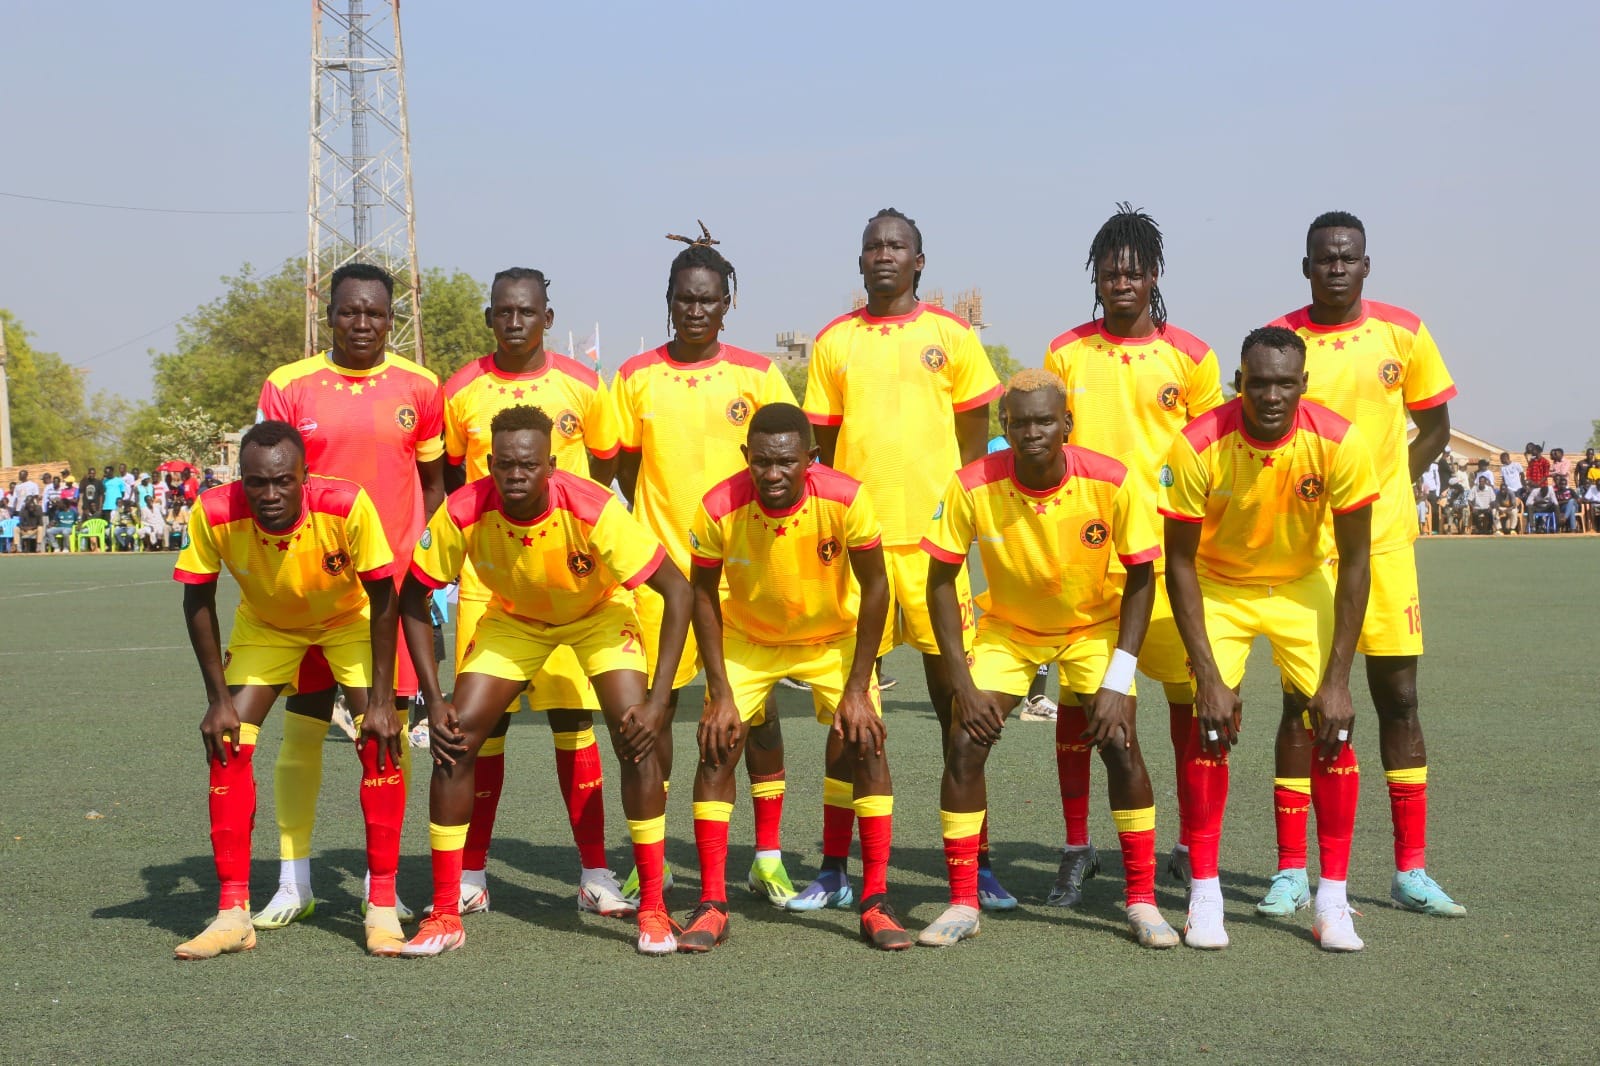 El-Merriekh (Bentiu) beat Jamus (Juba) 3-1 to win Zone B league